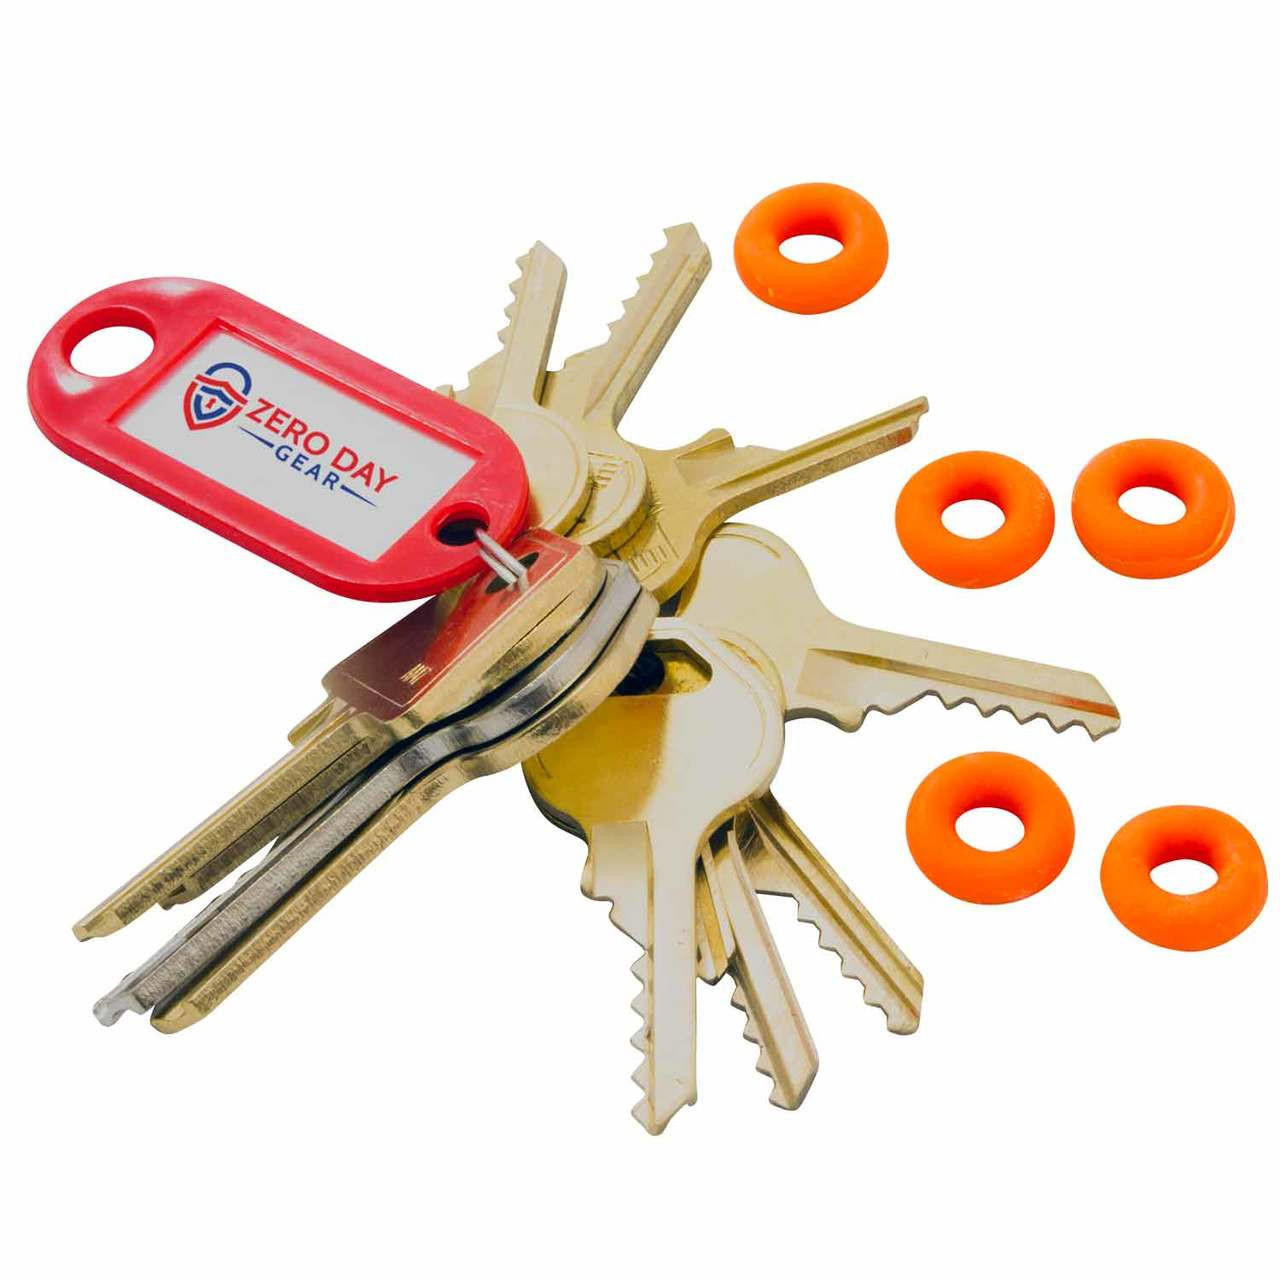 Padlock Bump Key Set: 12 Keys. Unlock Master & American Padlocks